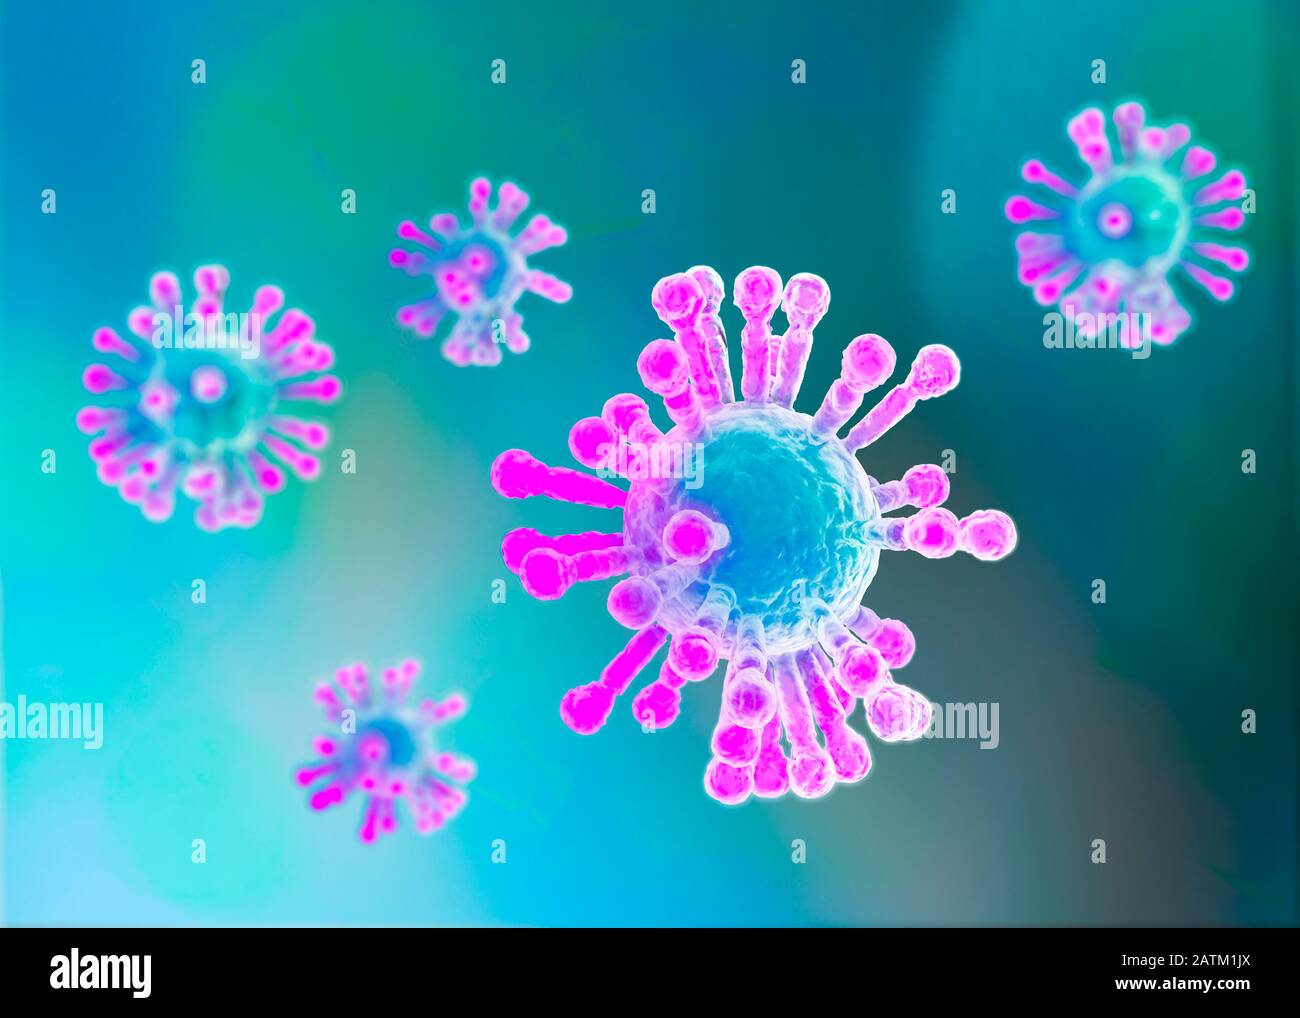 Mikroskopische Sicht auf Coronavirus, einen Erreger, der die Atemwege angreift. Ansteckung. Analyse und Test, Experimentieren. 2019-nCoV. Sars. Stockfoto